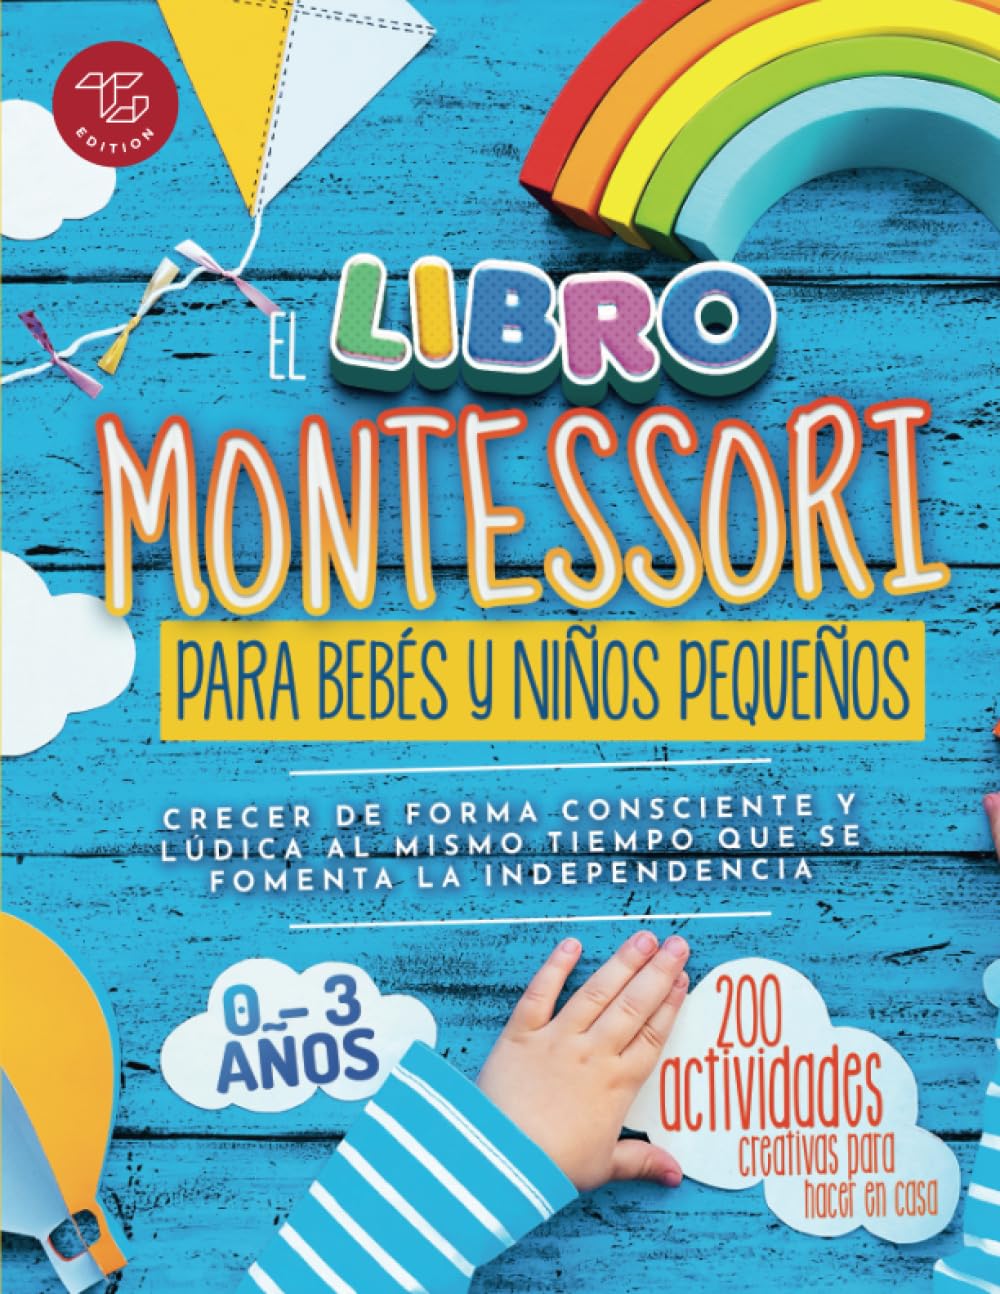 El Libro Montessori Para Bebés y Niños Pequeños: 200 actividades creativas para hacer en casa - Crecer de forma consciente y lúdica al mismo tiempo que se...